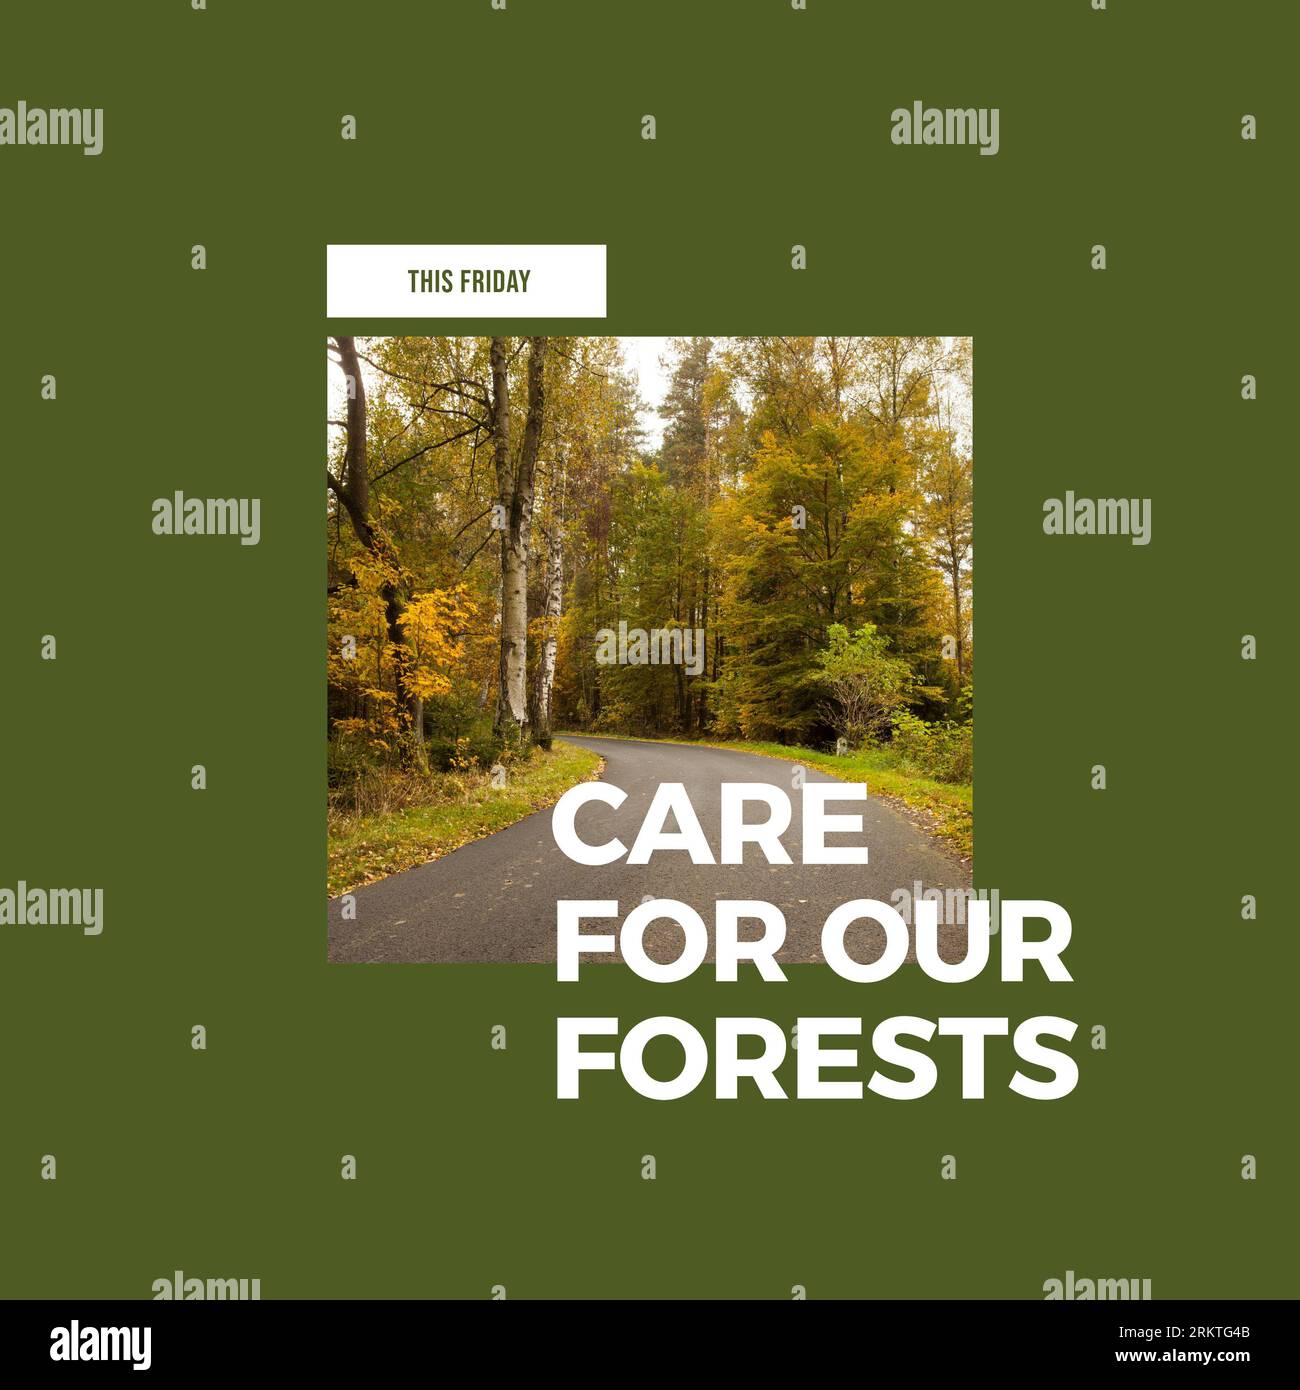 Komposit von diesem freitag, kümmern Sie sich um unsere Wälder Text über leere Straße inmitten üppiger Bäume im Wald Stockfoto